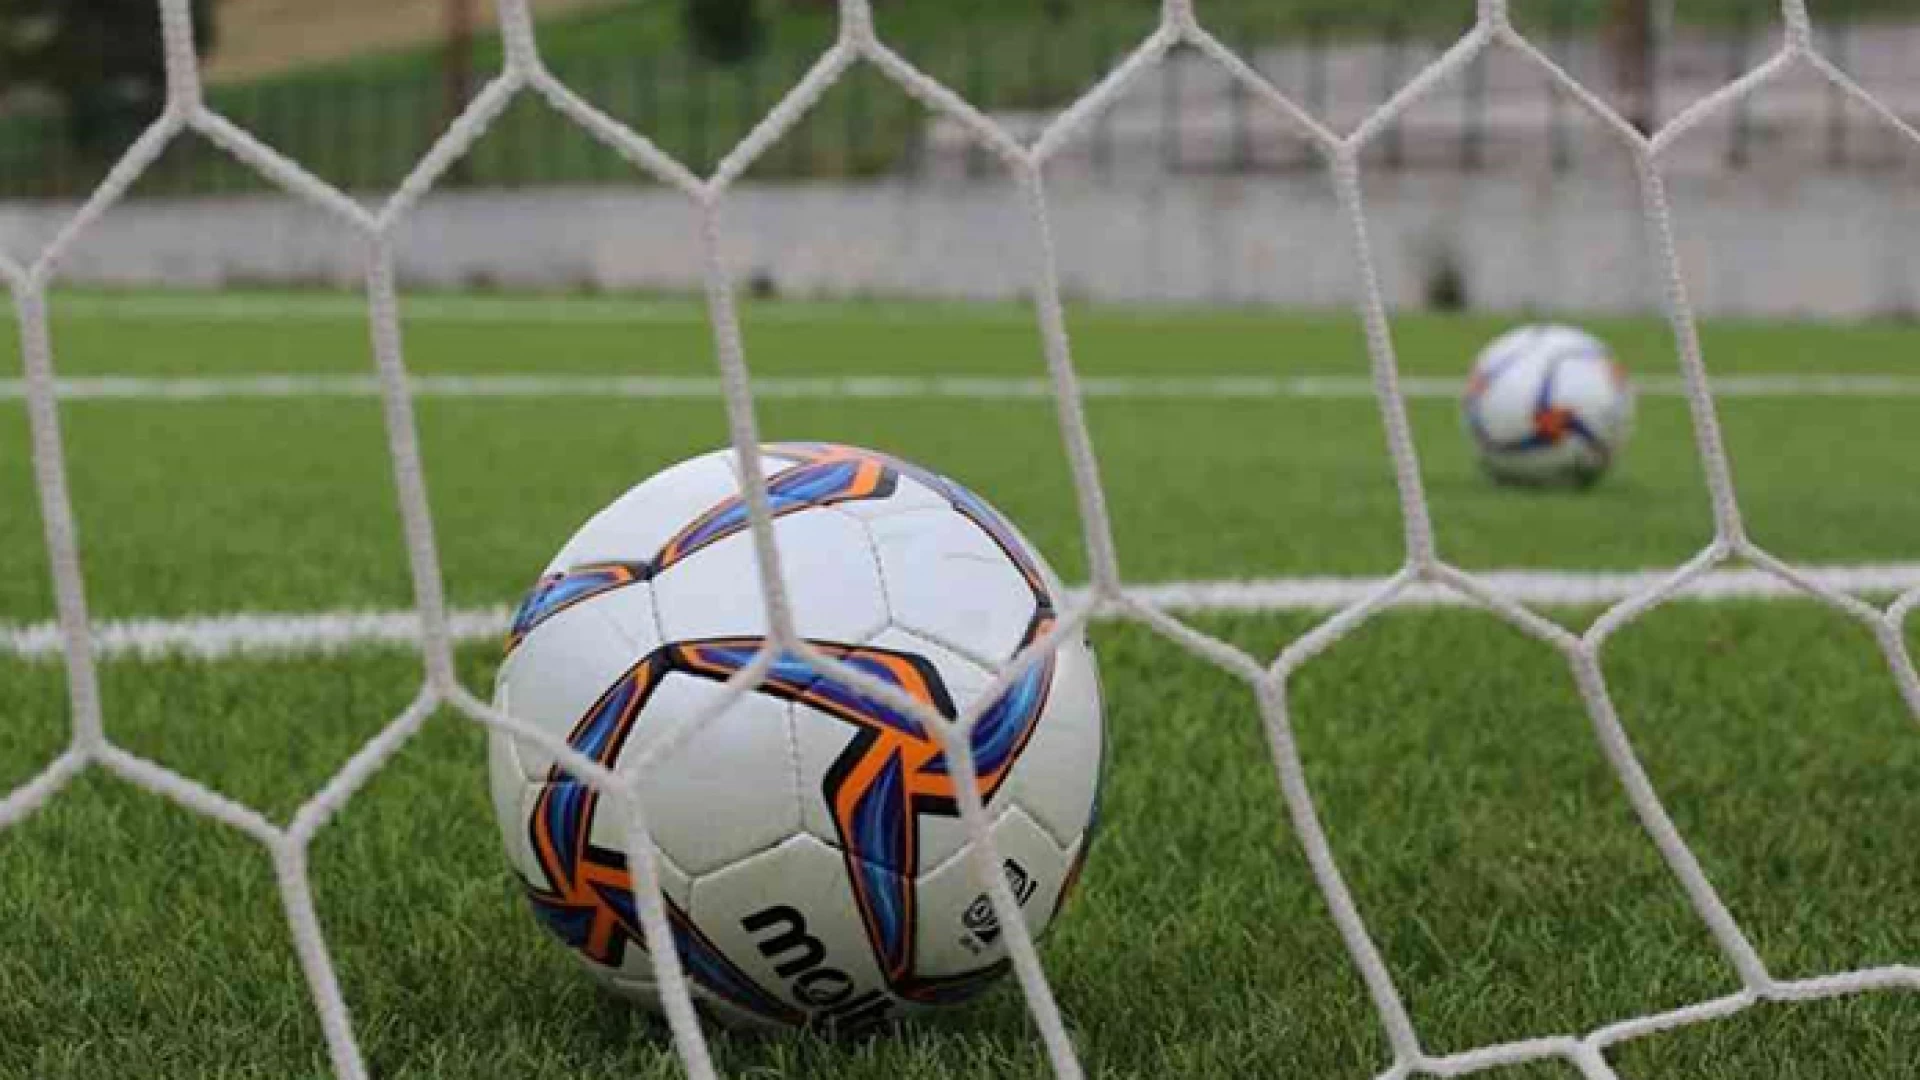 Calcio: Juniores regionali, domani la finalissima tra Venafro e Bojano. L’evento si disputerà al Mario Di Ianni di Cerro al Volturno.